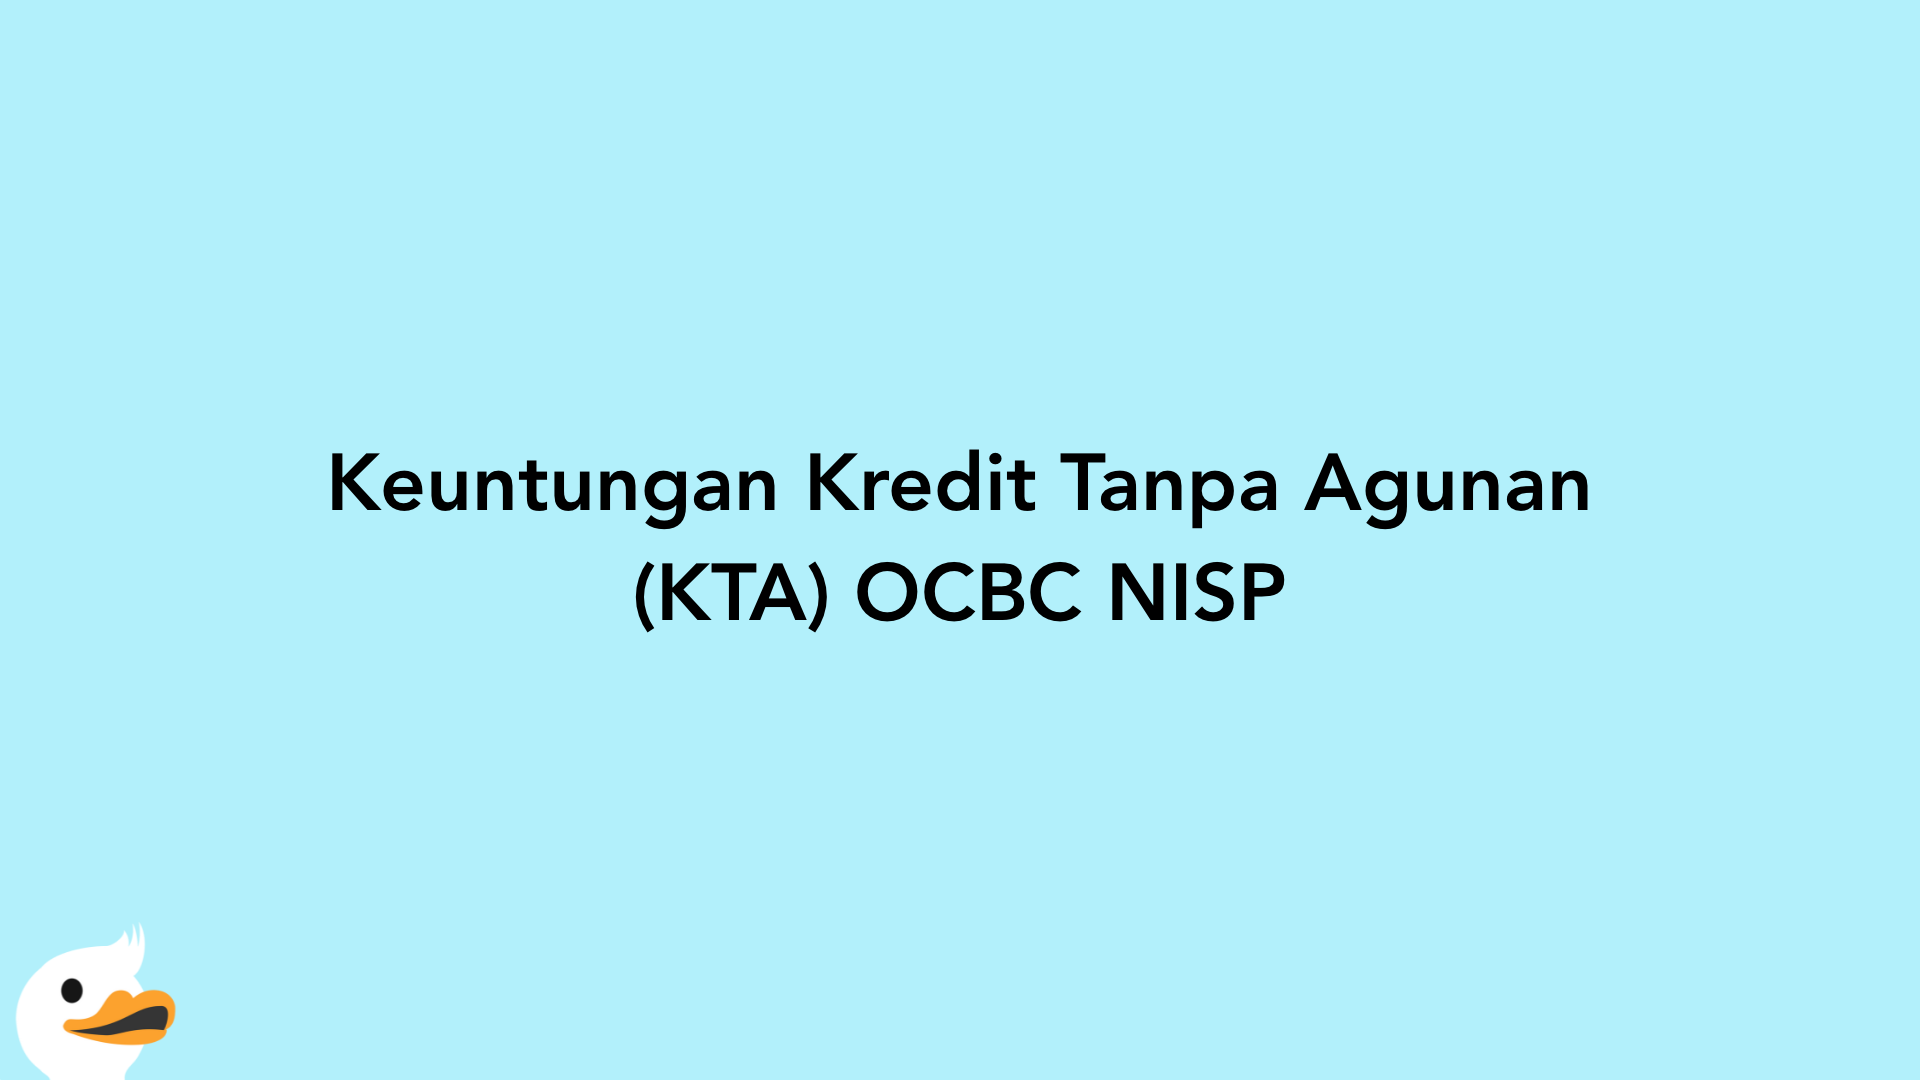 Keuntungan Kredit Tanpa Agunan (KTA) OCBC NISP